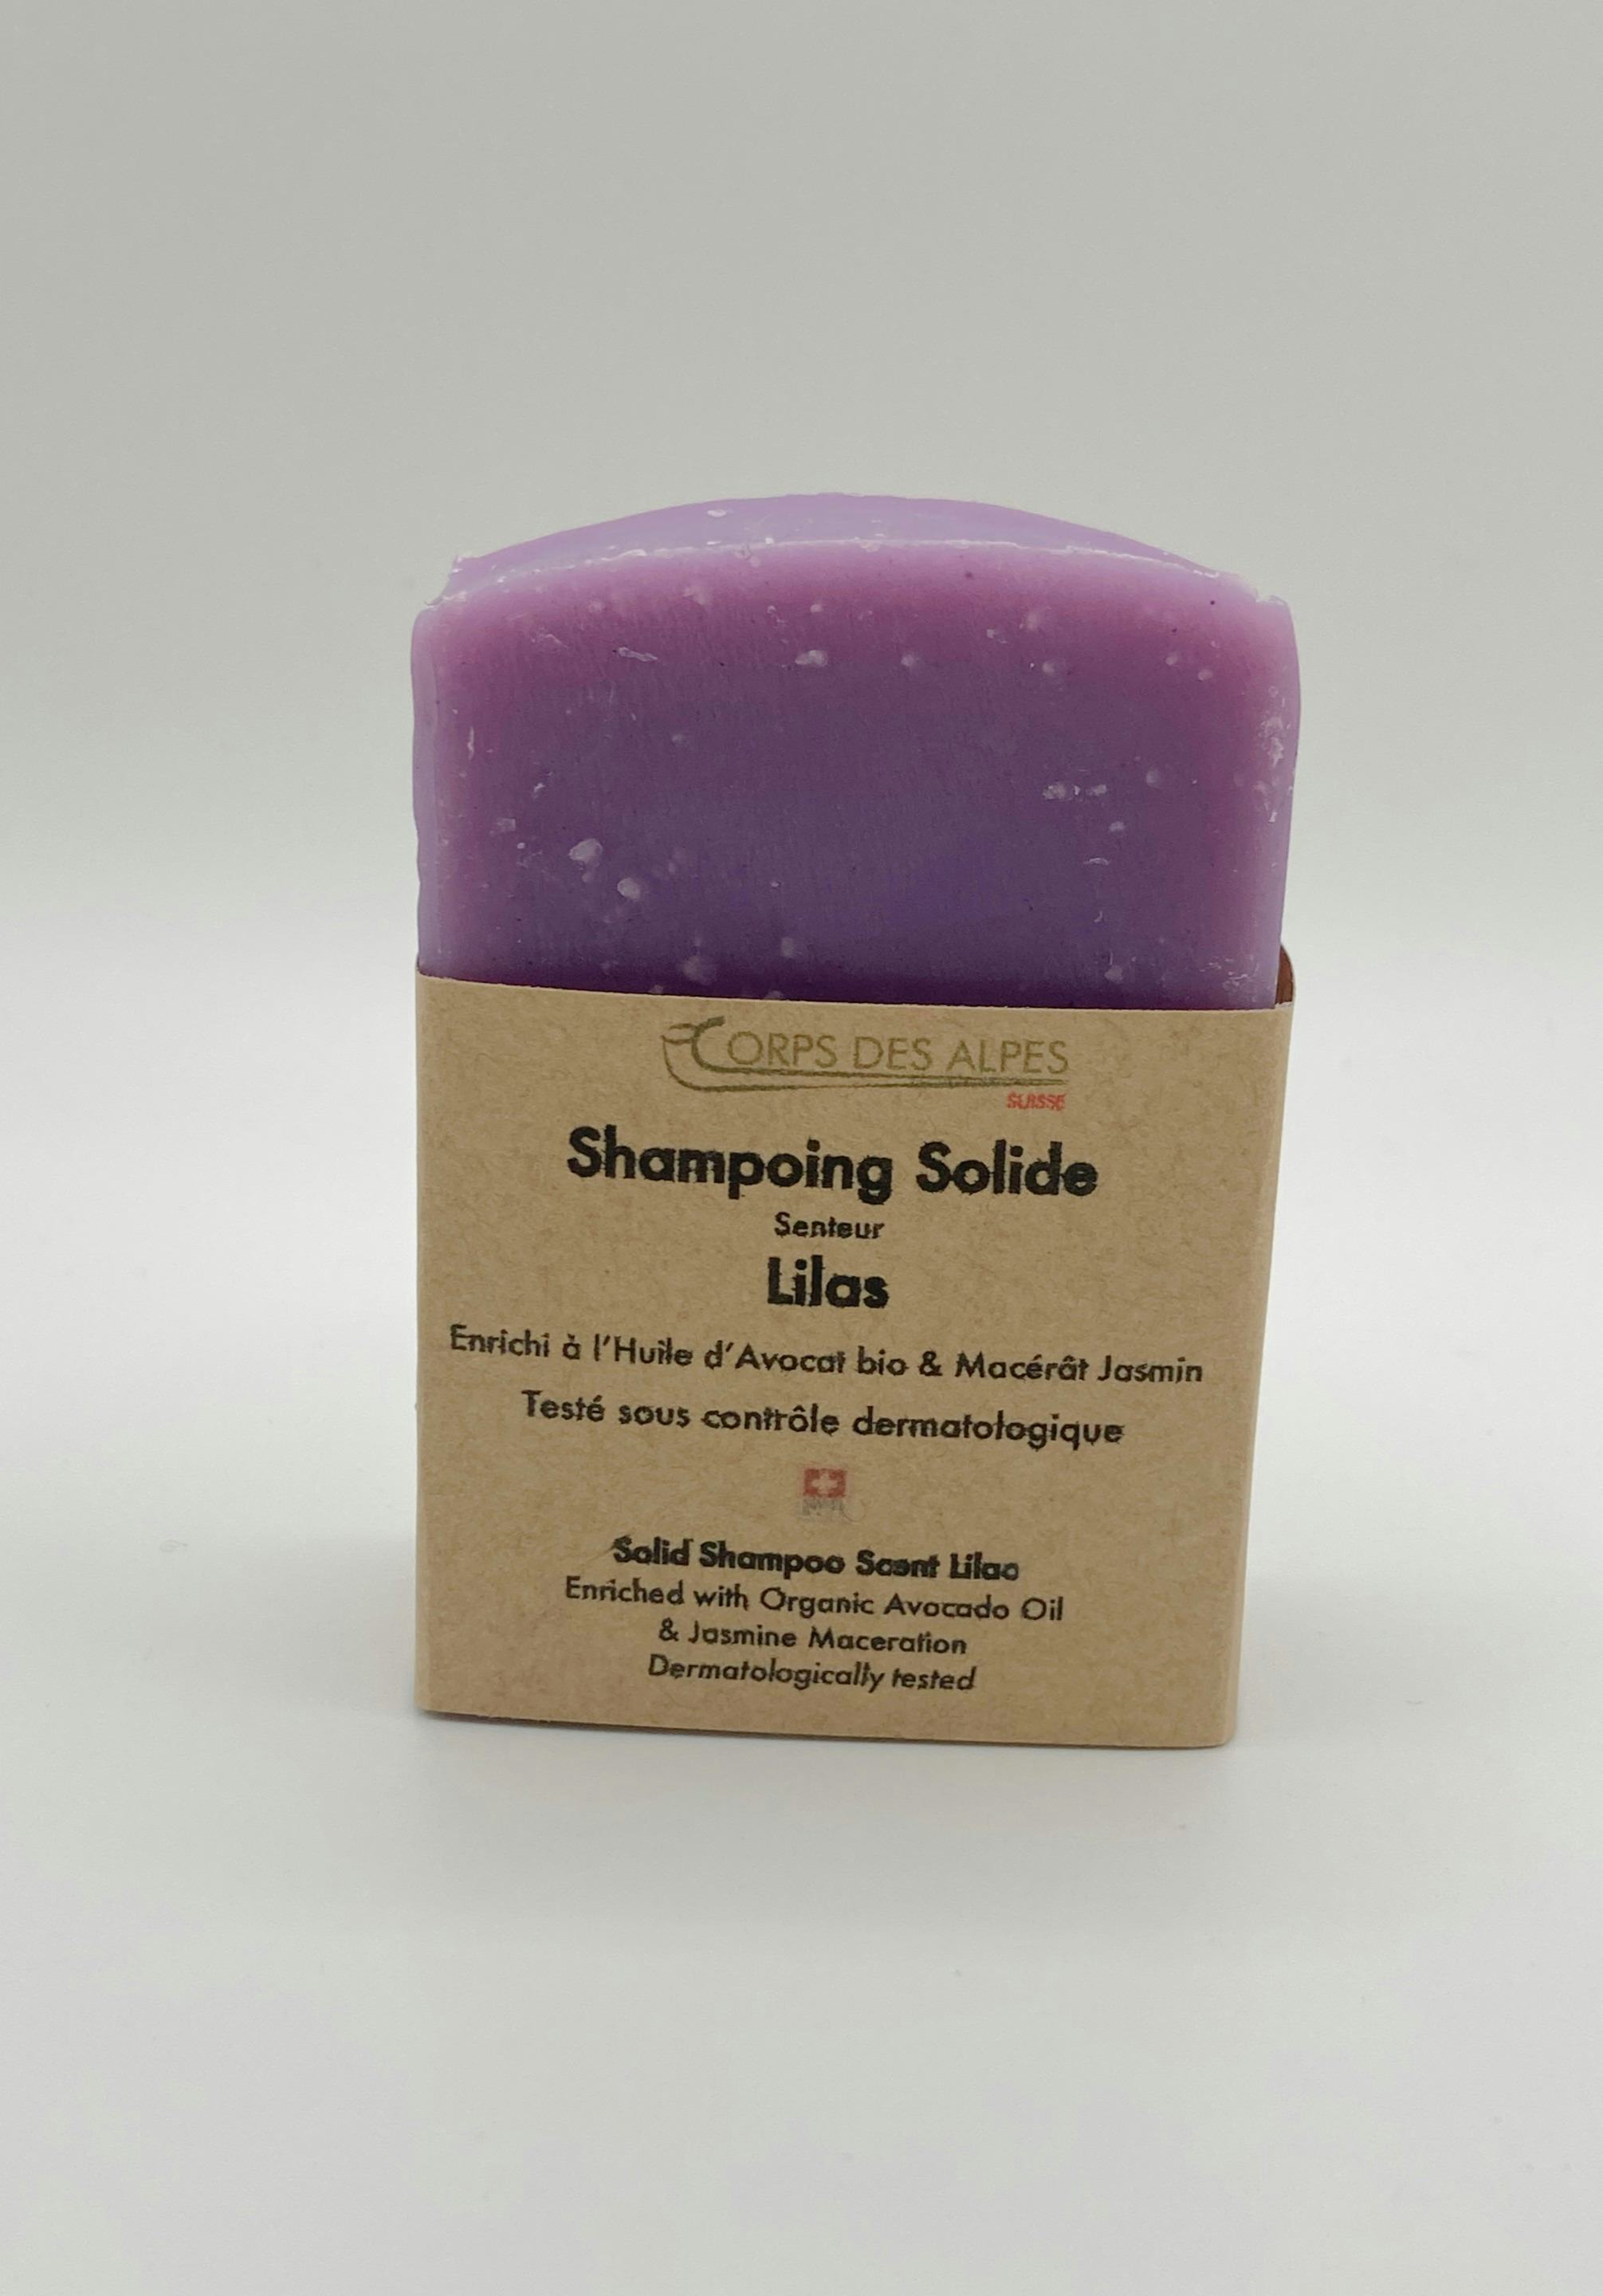 Festes Shampoo mit Fliederduft, handwerkliches Produkt für den Direktverkauf in der Schweiz